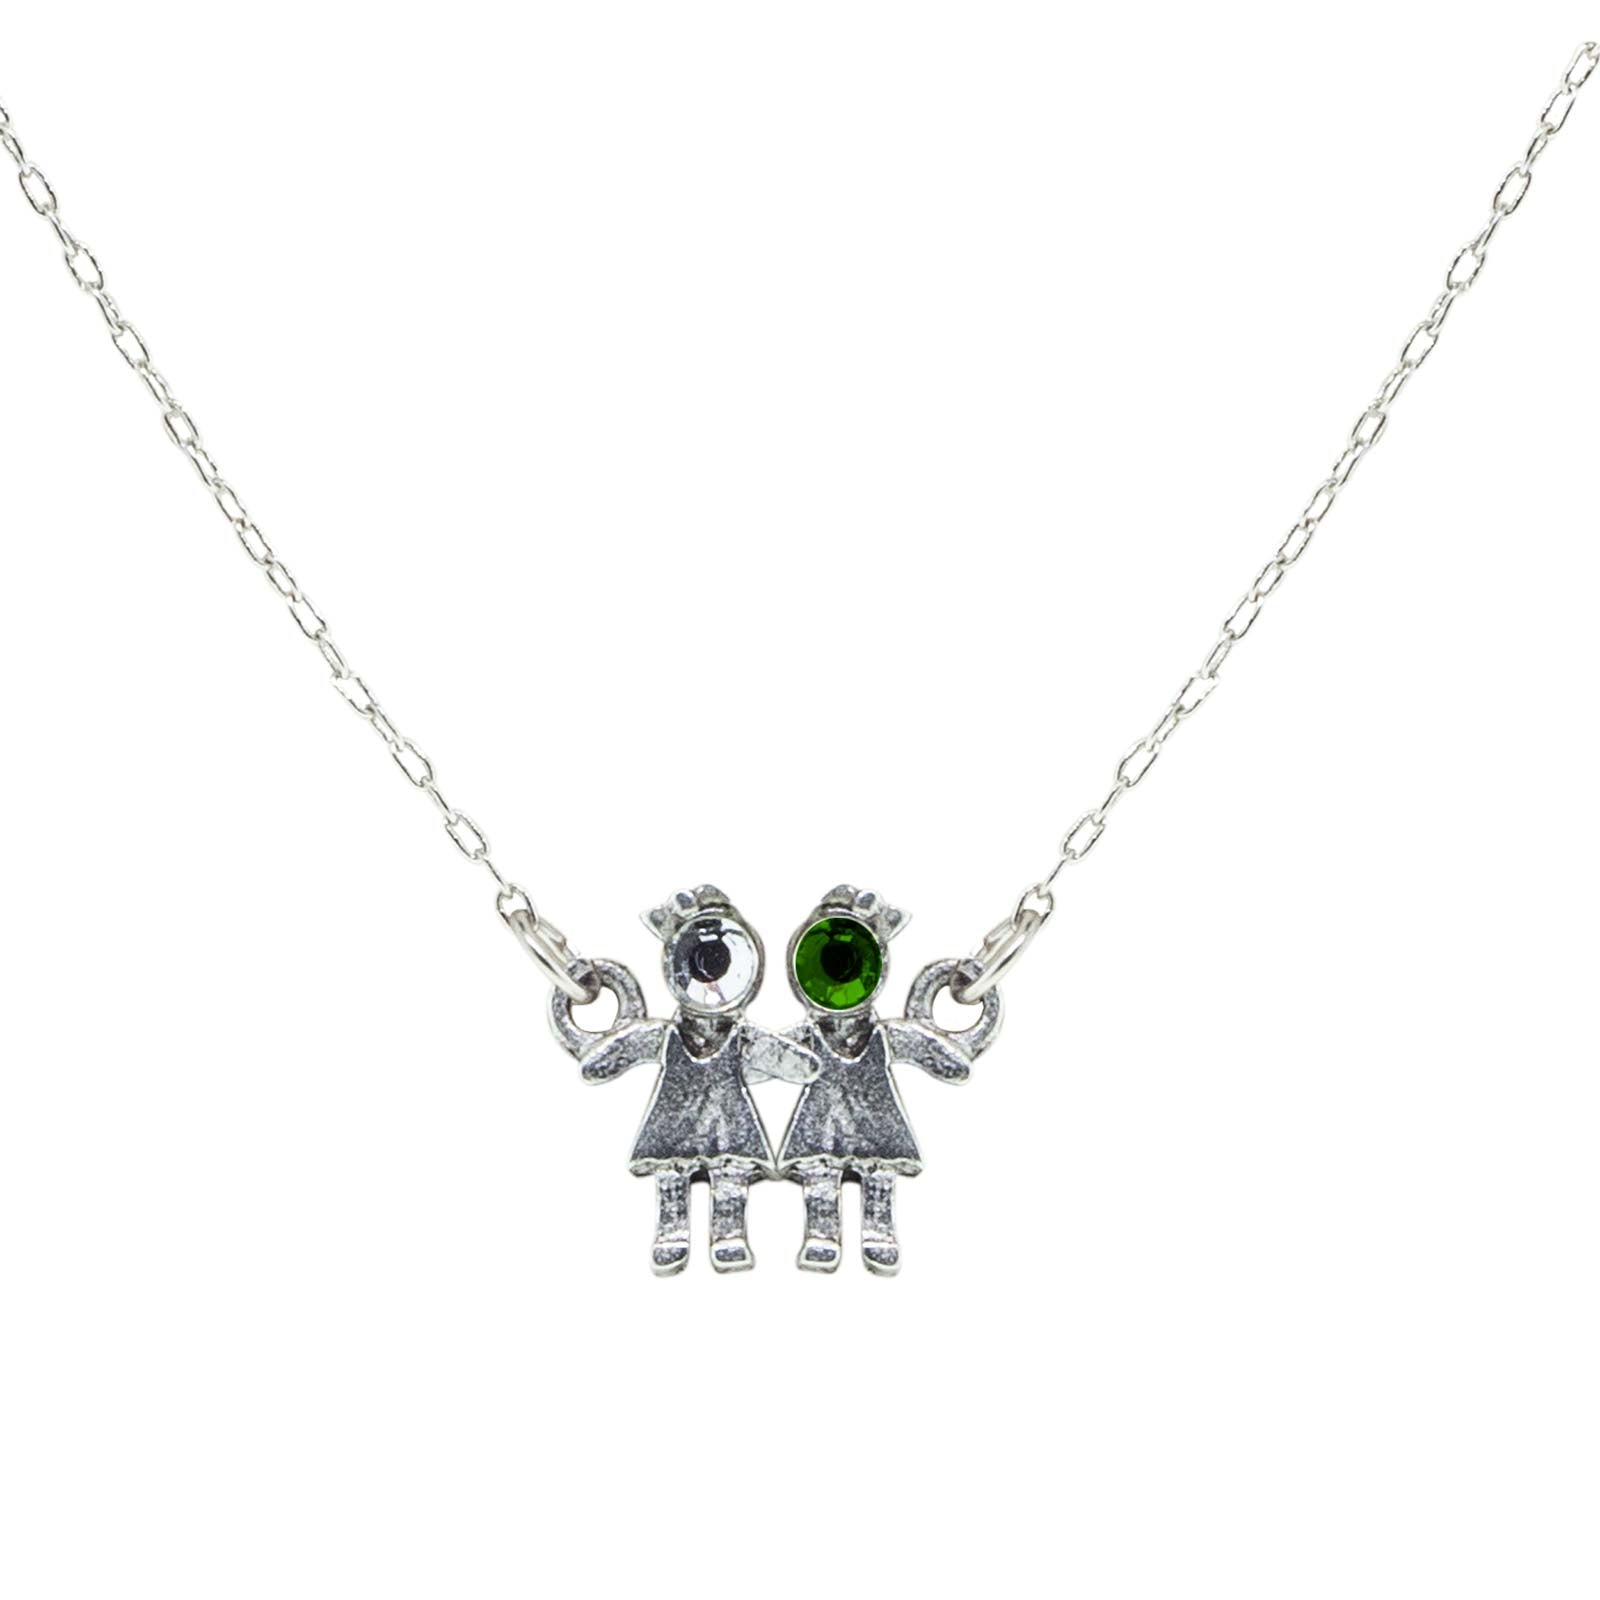 ✨Barbie for Girls Vintage Friendship 16” Chains W/Star Jewelry Mattel 1991  NOS✨